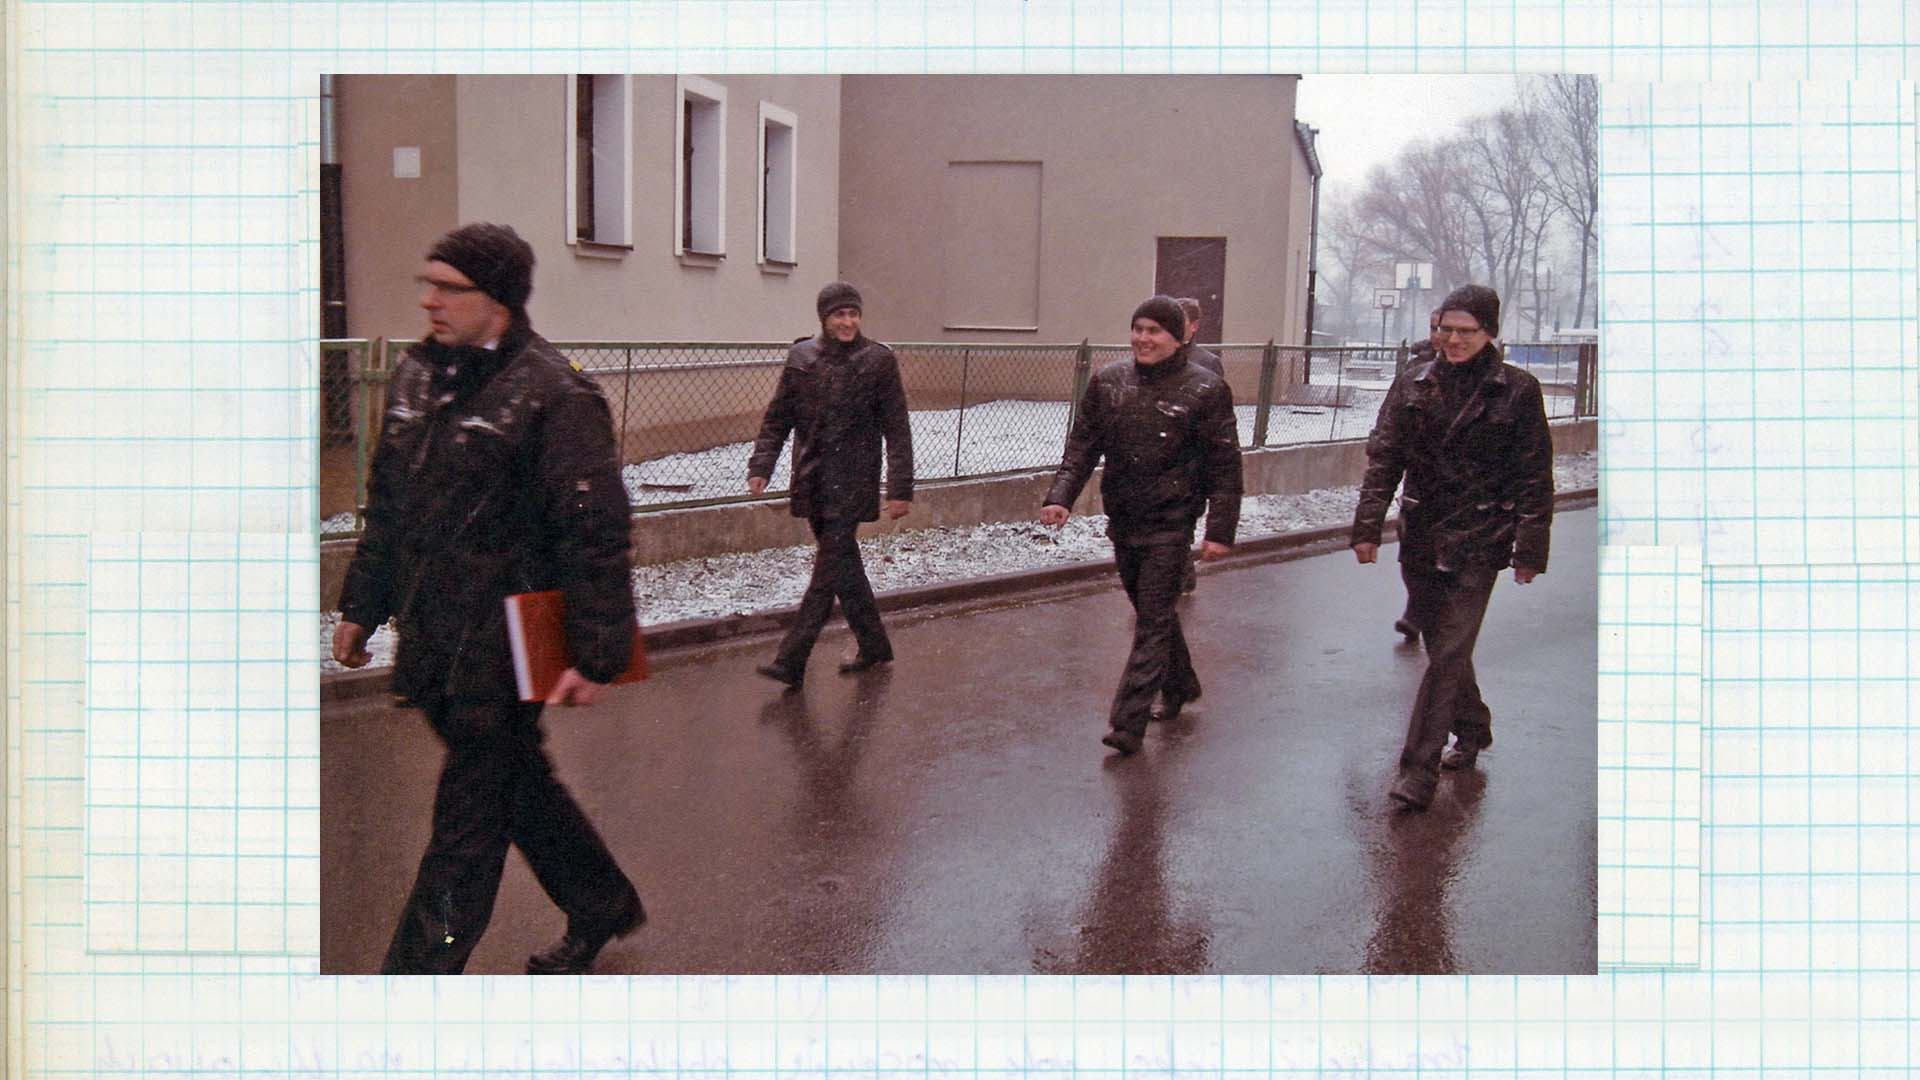 Zdjęcie w kolorze. Grupa mężczyzn przechodzi ulicami miejscowości. Mężczyźni uśmiechają się do siebie, a ich ubrania pokrywa cienka warstwa śniegu. W tle widoczne budynki i trawnik pokryty śniegiem.